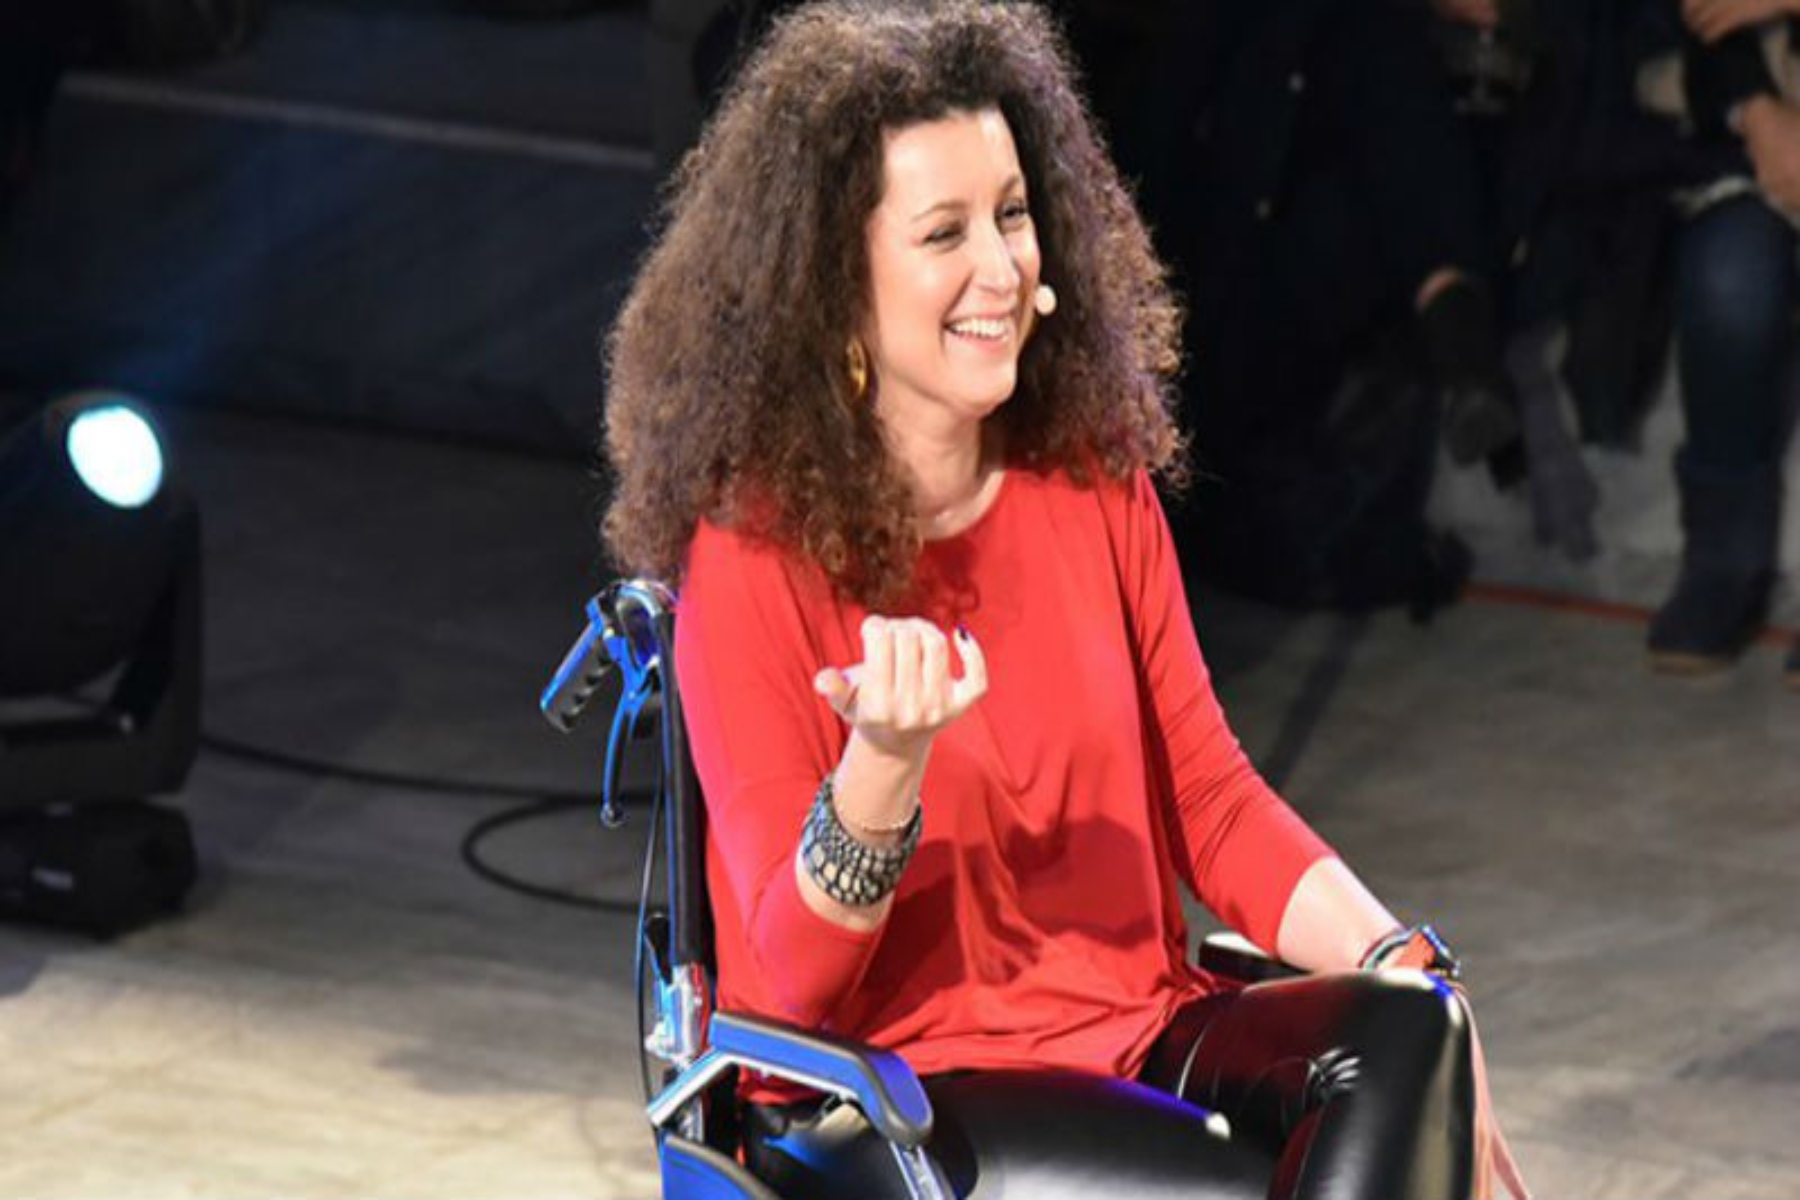 Κατερίνα Βρανά: Σχεδόν πέθανα από σηψαιμικό σοκ, μη θίγεστε από τη λέξη “αναπηρία”